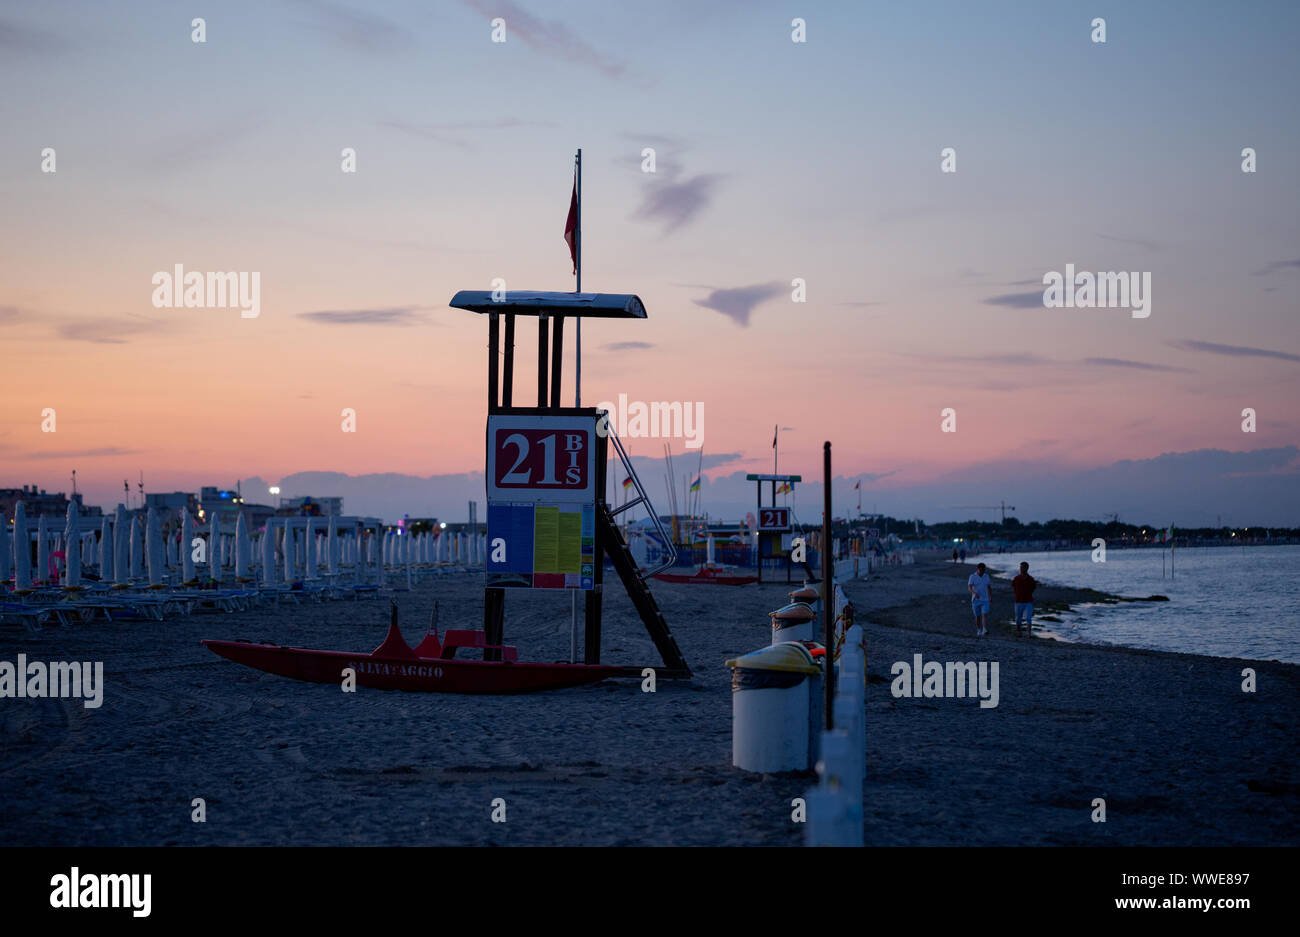 Sottomarina di Chioggia, Italien - 16. Juni 2019: Sonnenuntergang in der Sandstrand mit Blick auf das Meer, die Rettung Tower, Kite Surfer, Meer. Stockfoto